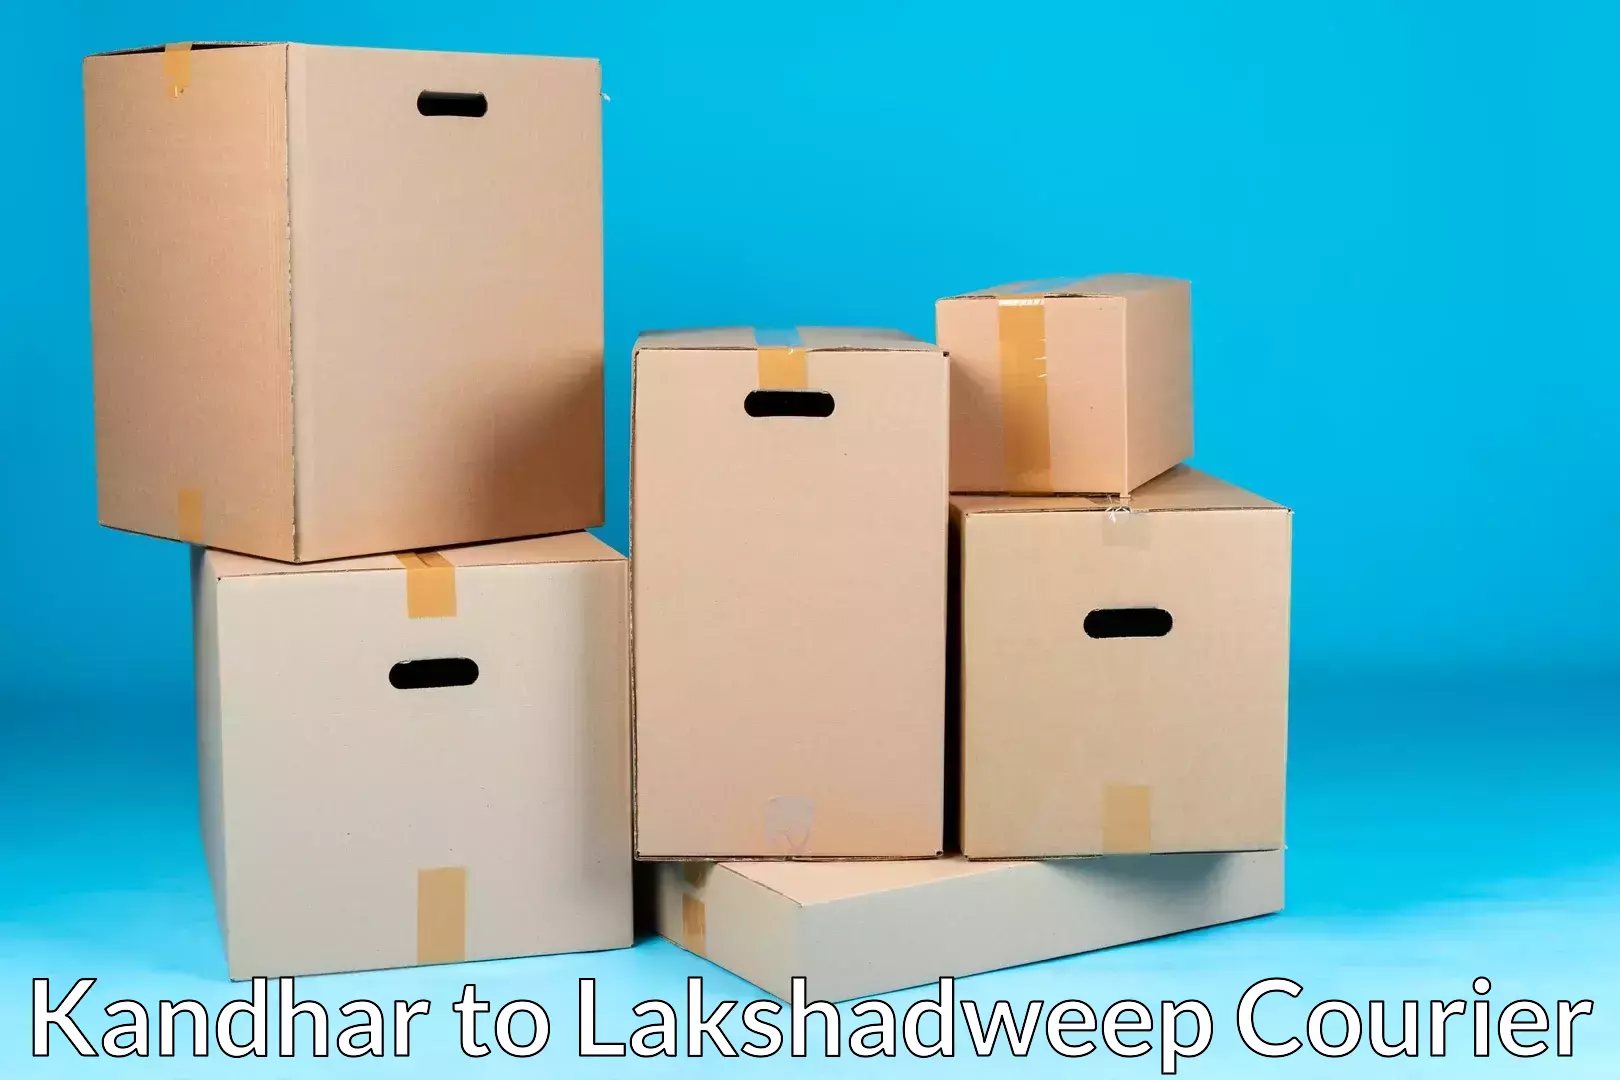 Premium moving services Kandhar to Lakshadweep